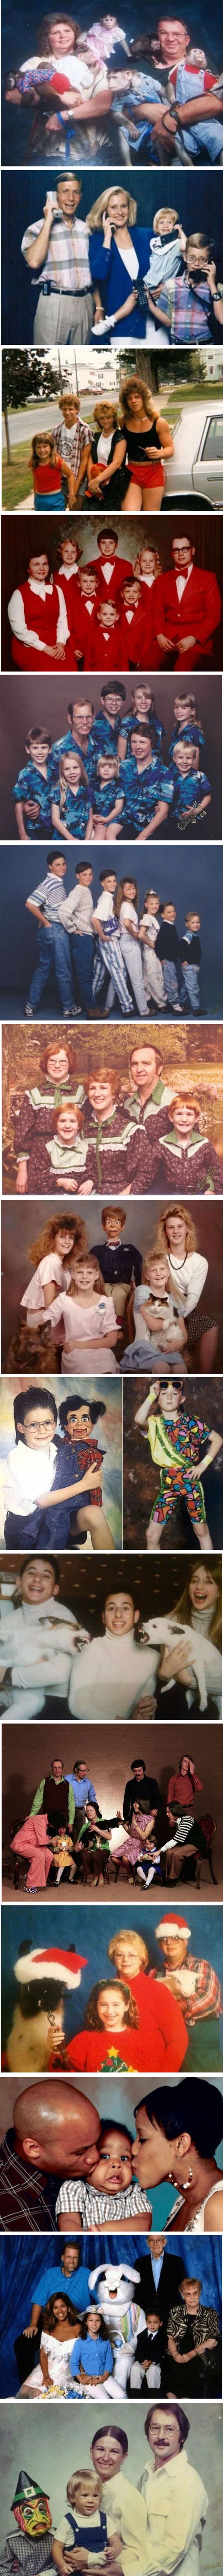 Galerija čudnih i smiješnih obiteljskih portreta koji će unijeti dozu smijeha u vaš dan